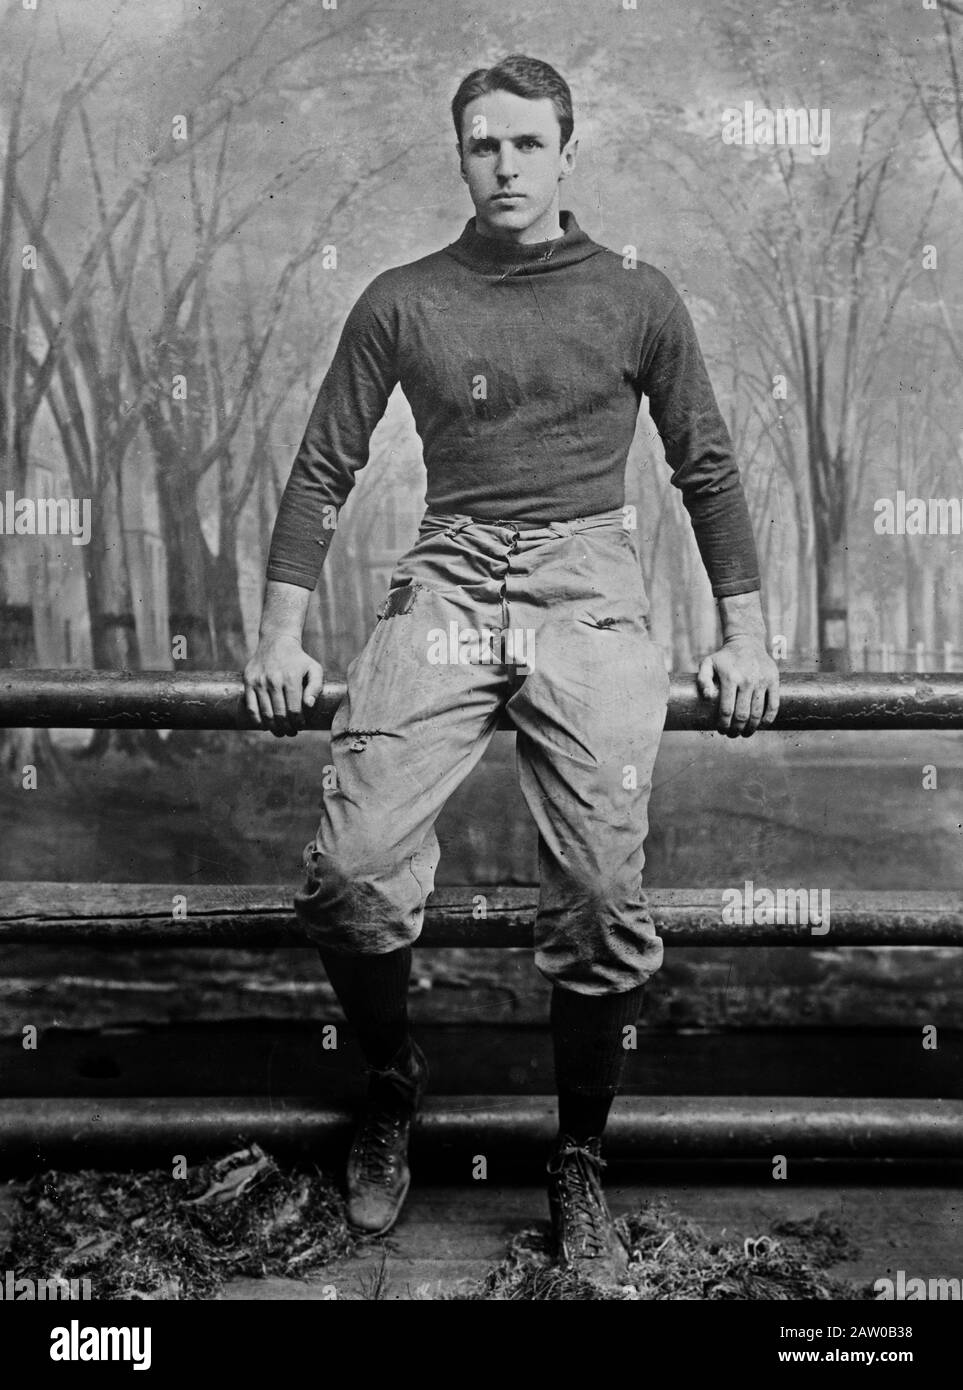 Joueur de football Lucius Horatio 'Ray' Bigelow III qui a joué pour l'équipe de football de Yale de 1905 à 1908 Banque D'Images